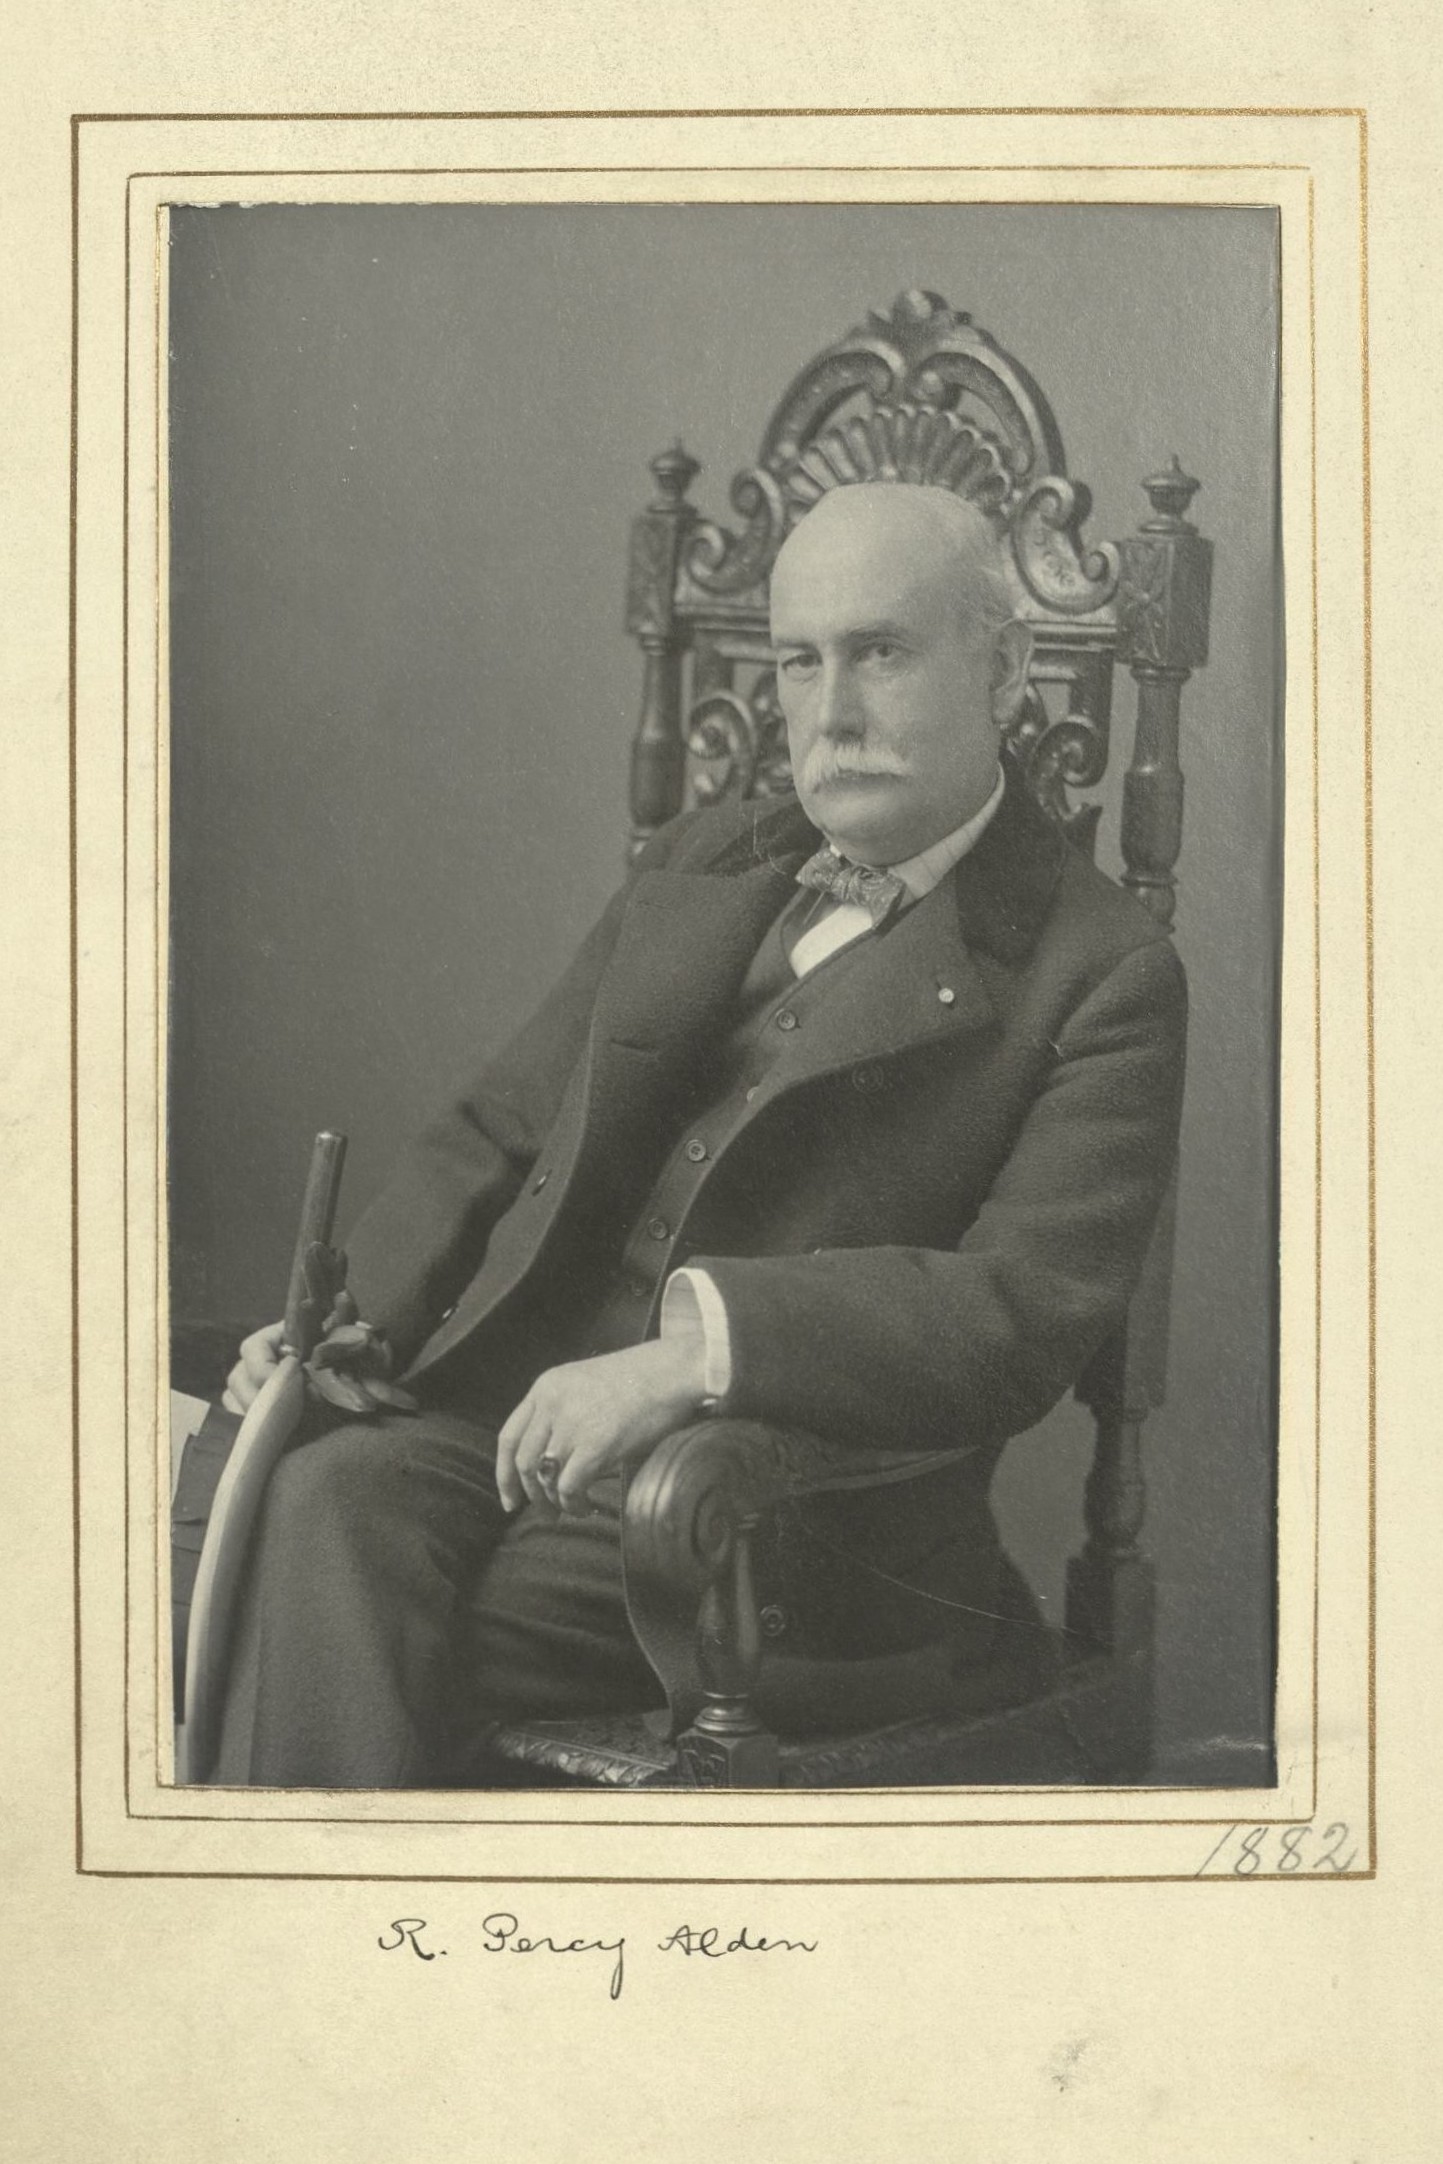 Member portrait of R. Percy Alden